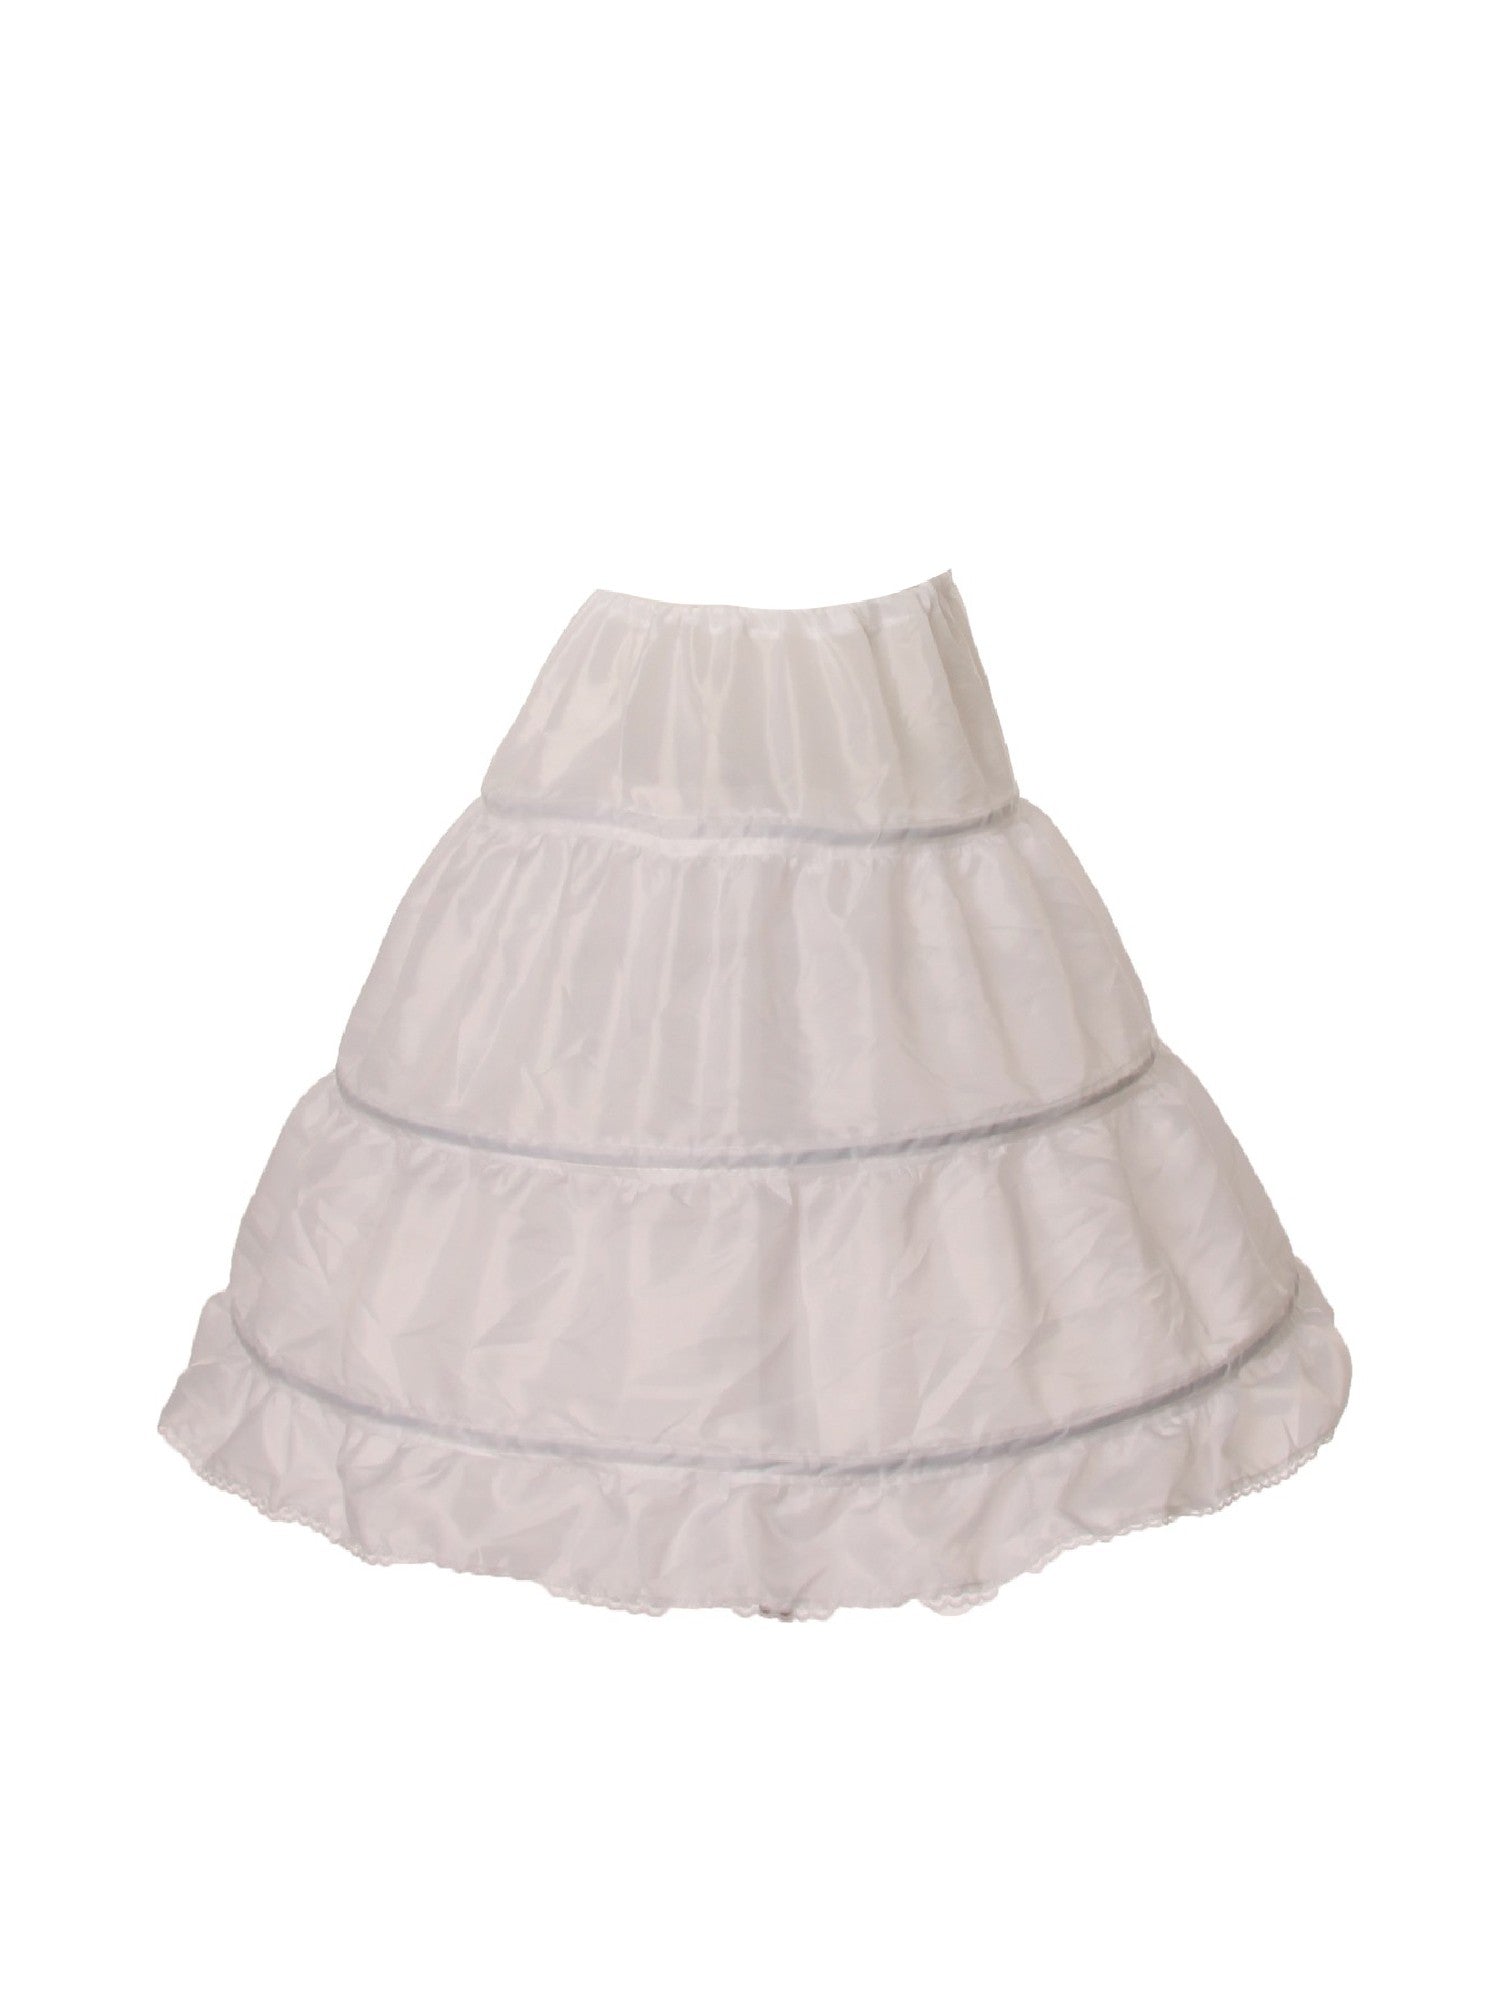 Girls petticoat, full slip for girls cotton white slip Strasburg Children